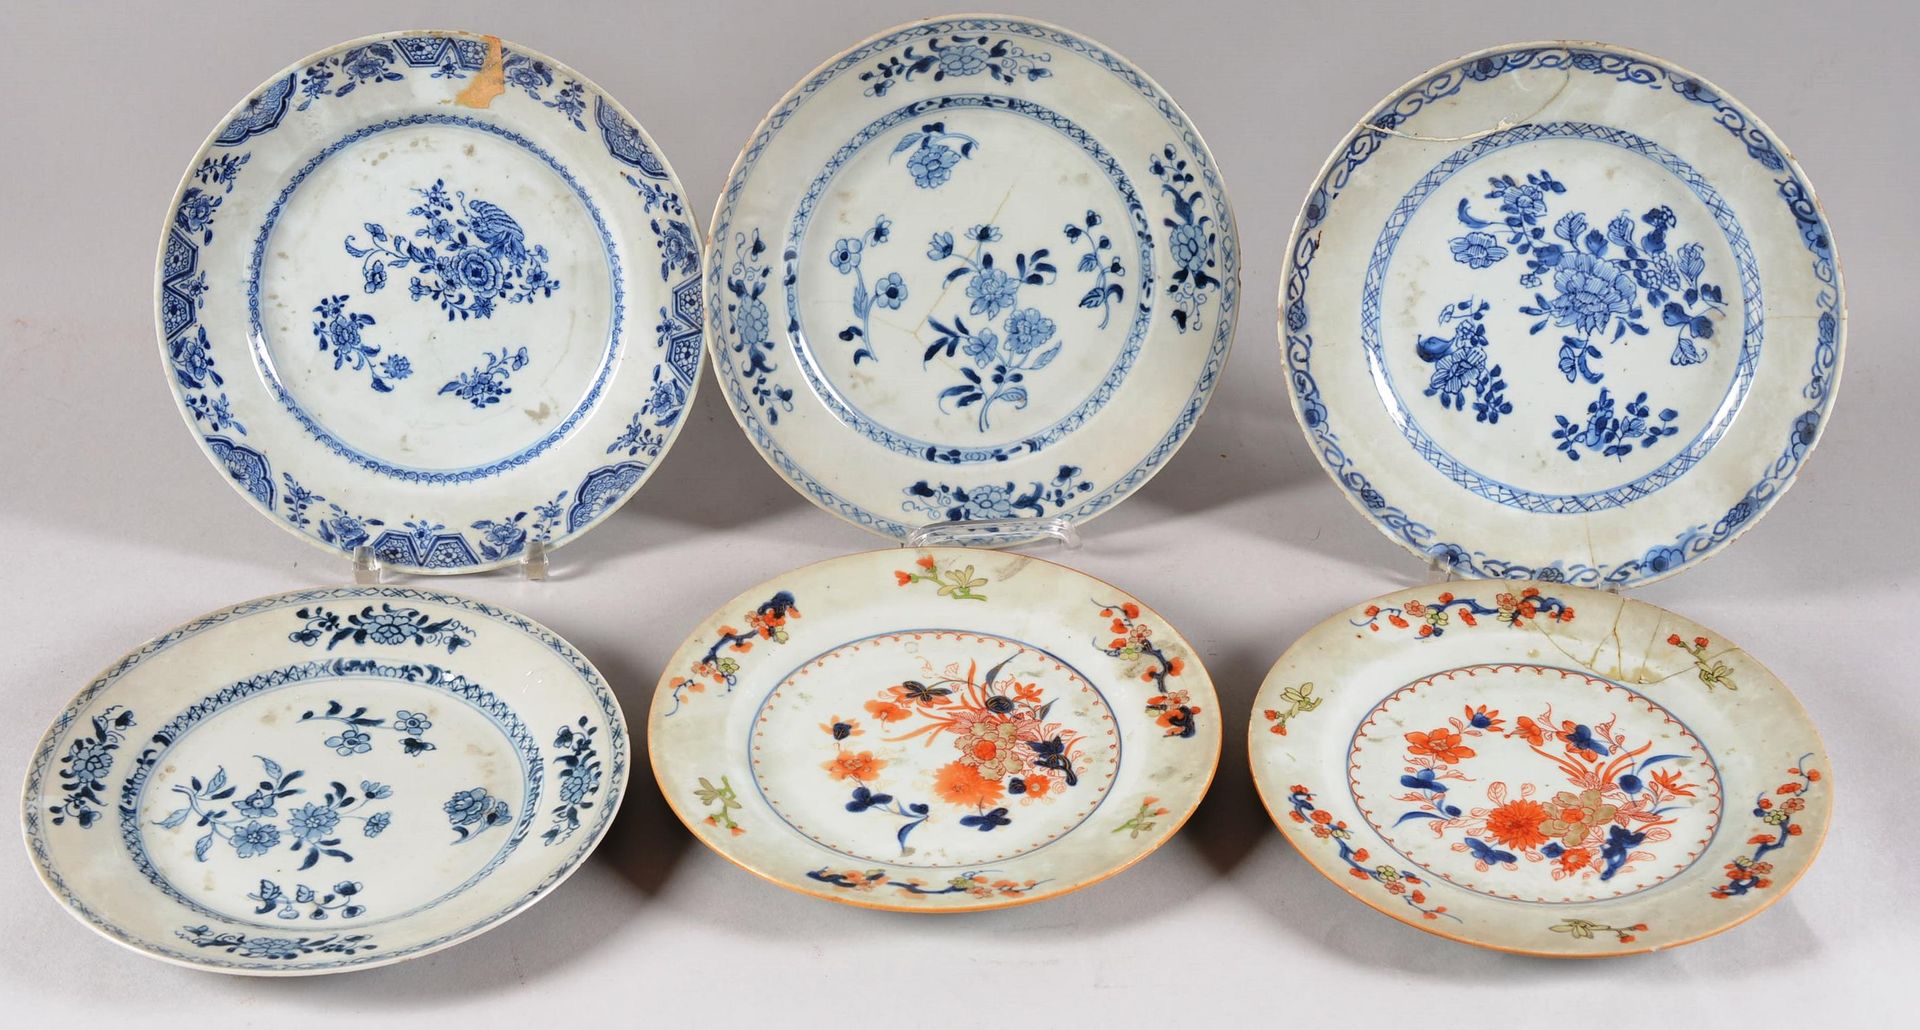 Suite de six ( 6 ) assiettes 中国。

一套六件中国瓷盘，其中四件为釉里红装饰，两件为伊玛瑞。

事故。头发。

直径：23厘米